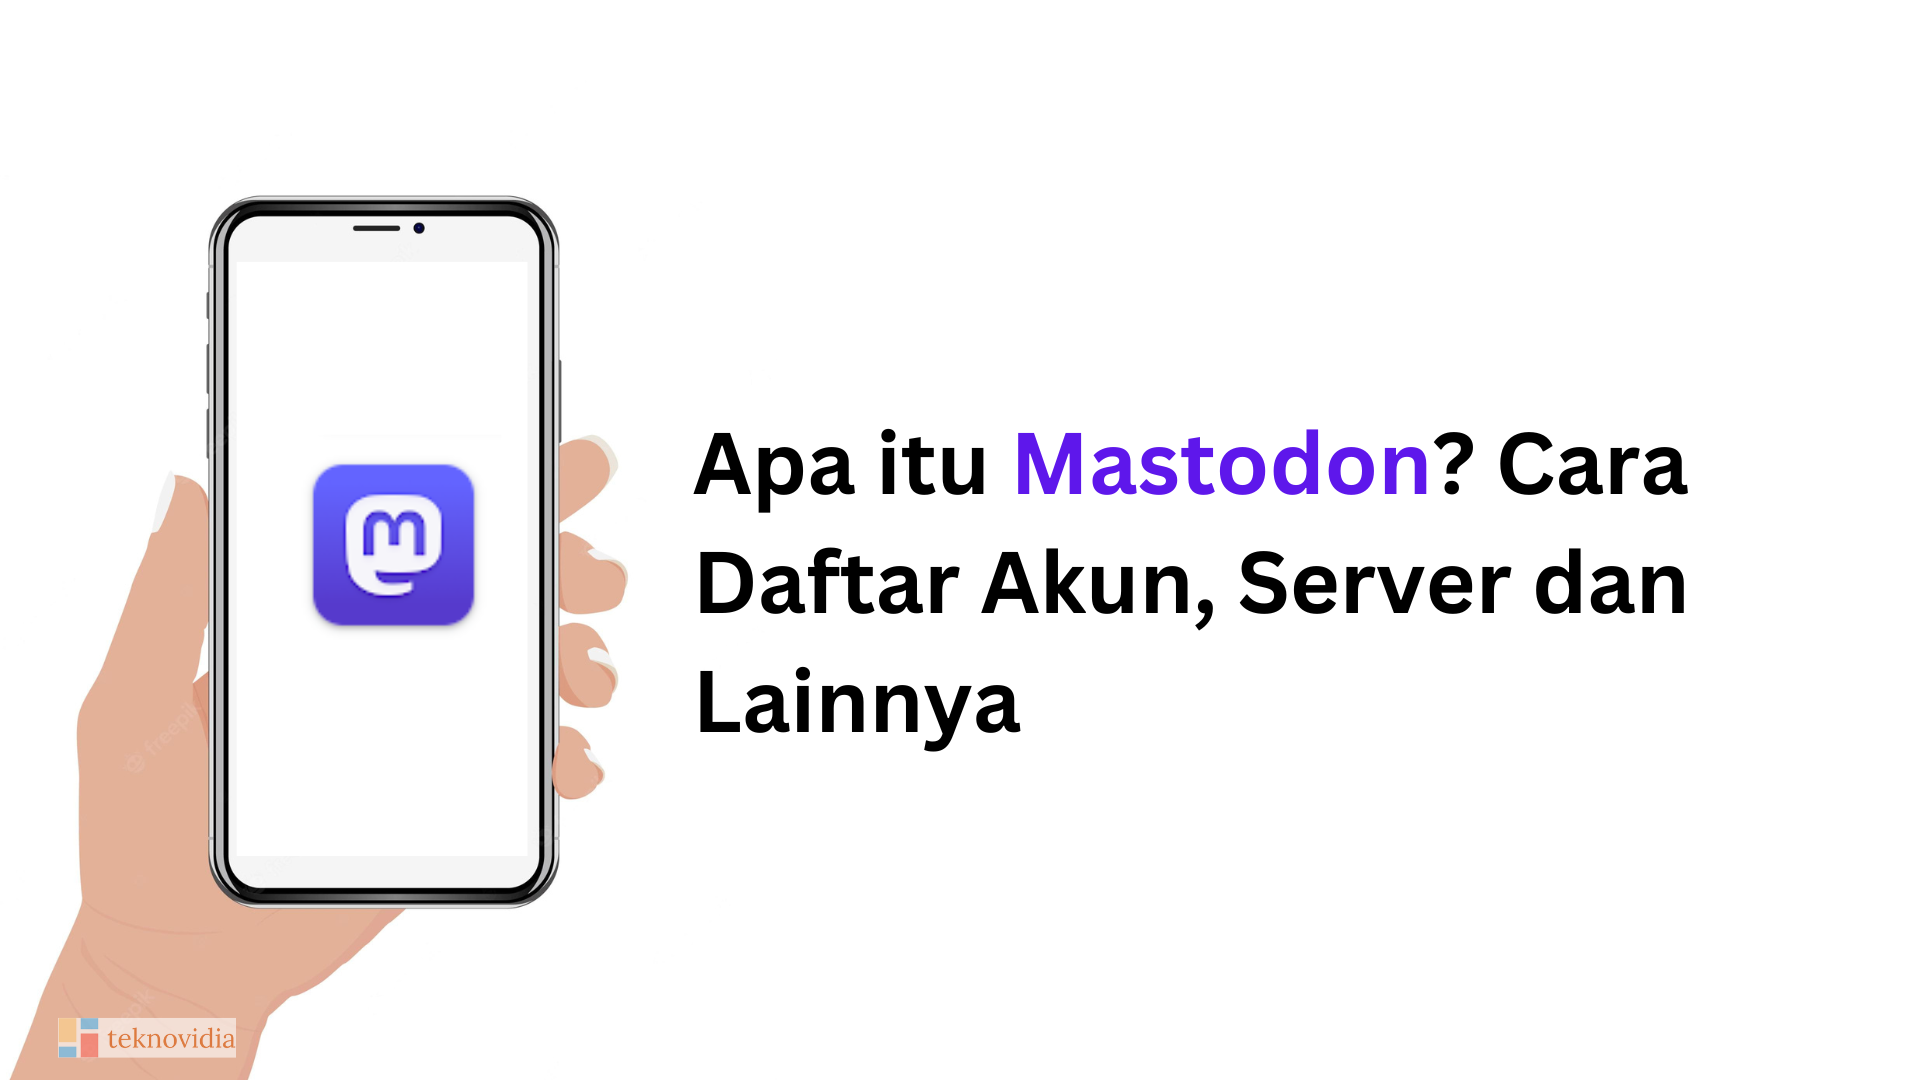 Apa itu Mastodon? Cara Daftar Akun, Server dan Lainnya